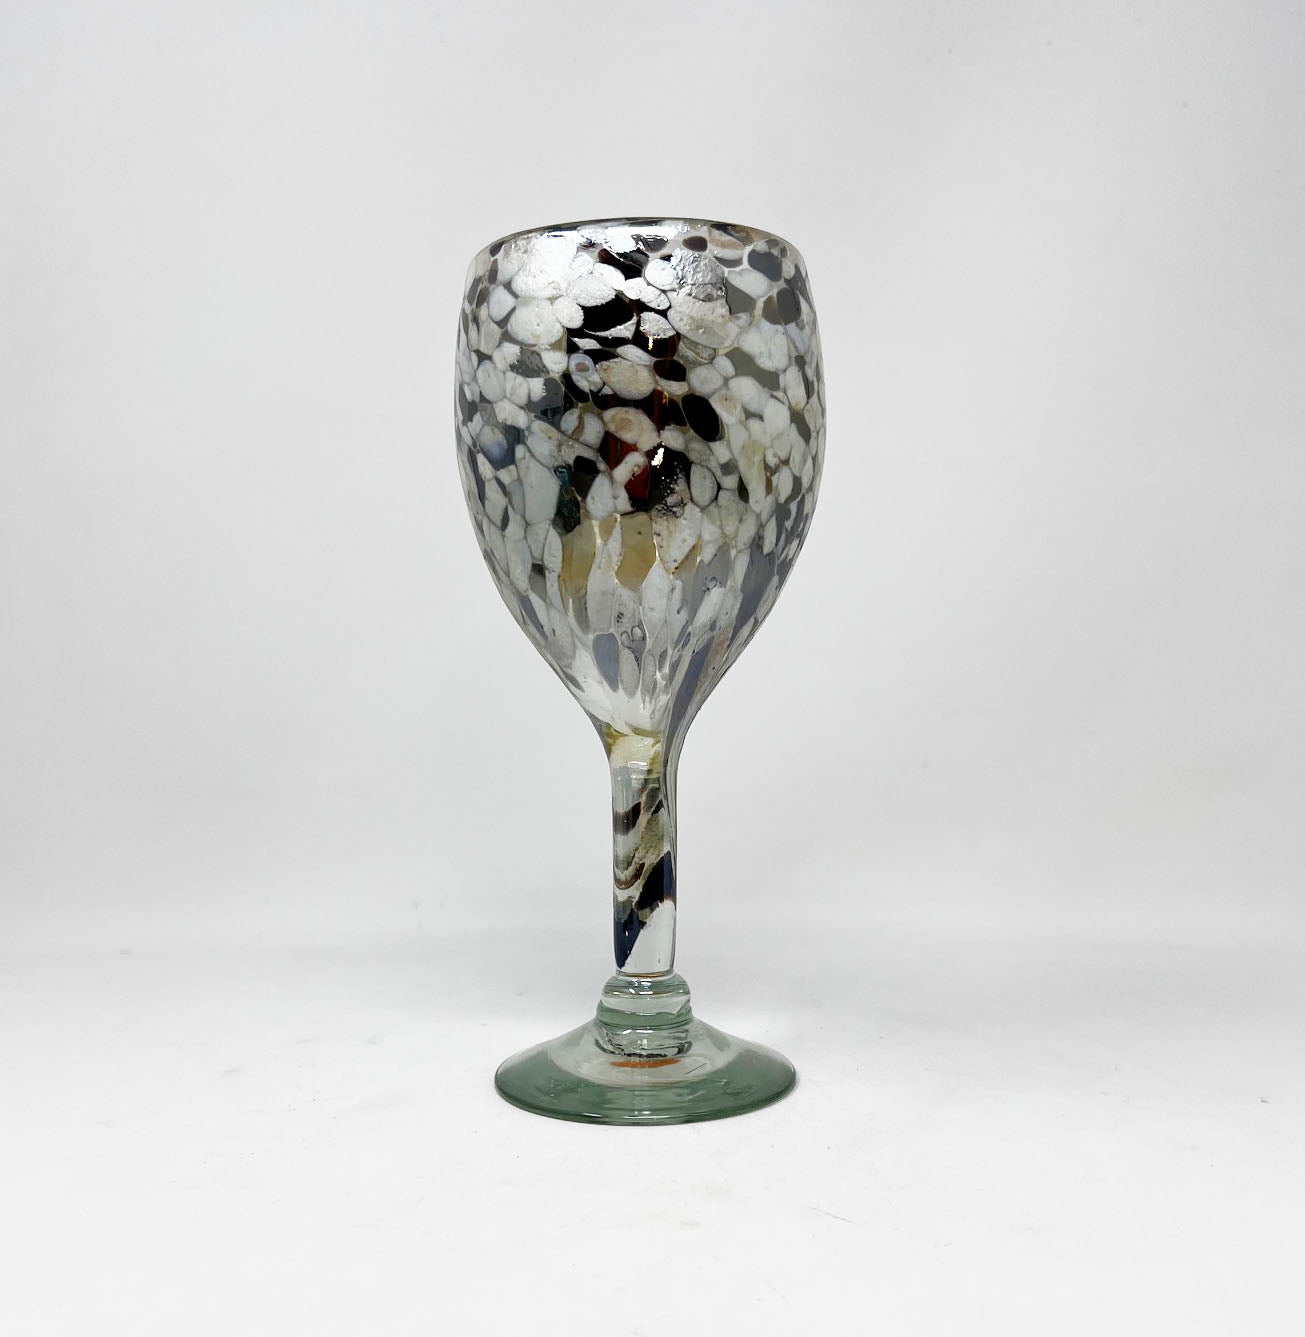 Hand Blown Wine Glass - Mocha/Tan Confetti